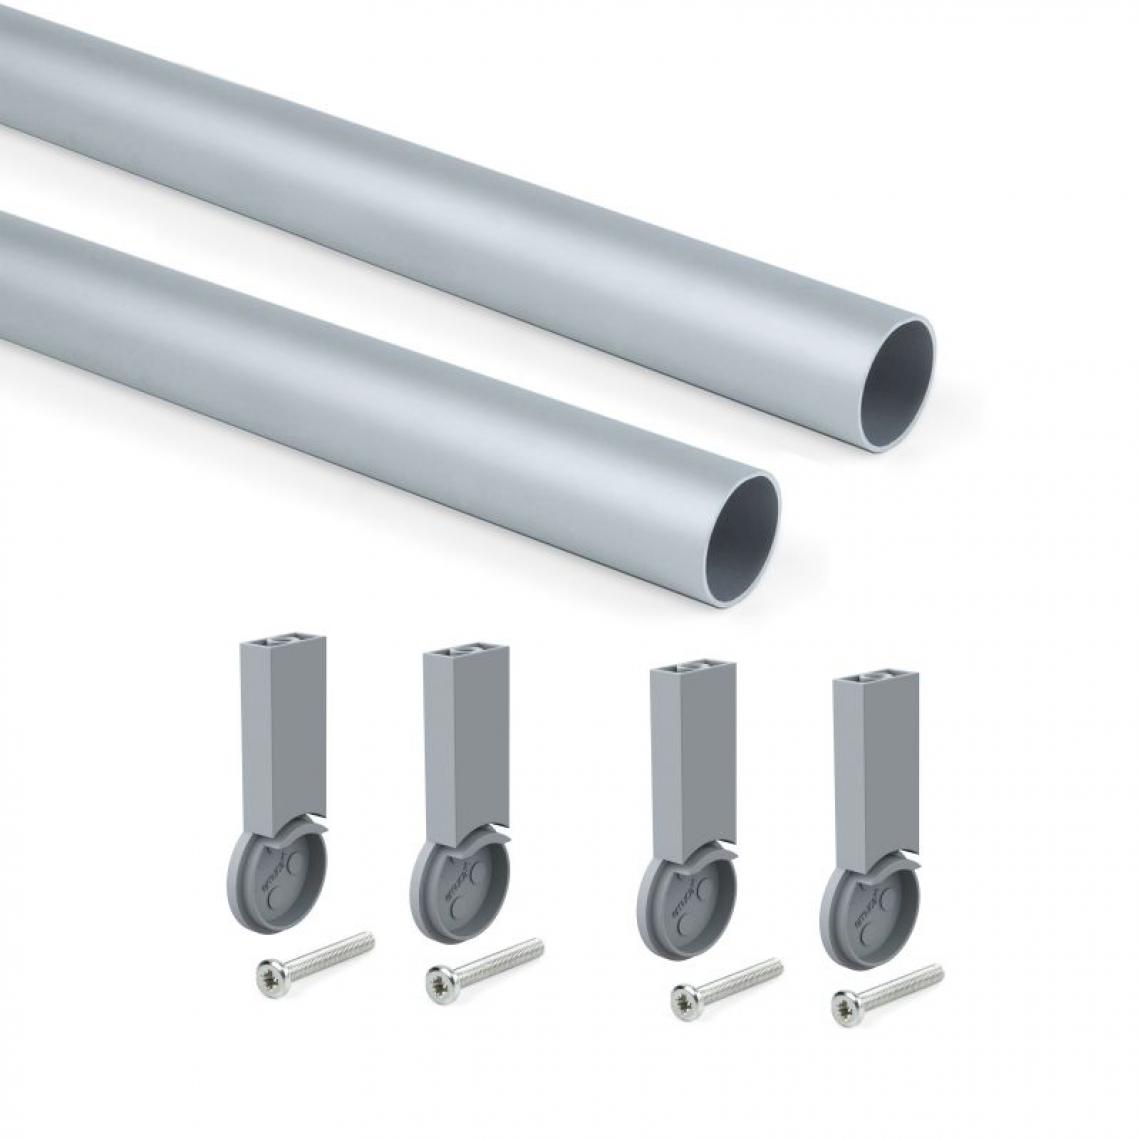 Inconnu - (1 Kit) Kit tube de penderie circulaire D. 28, 1150 mm, aluminium, Anodisé mat - Cheville